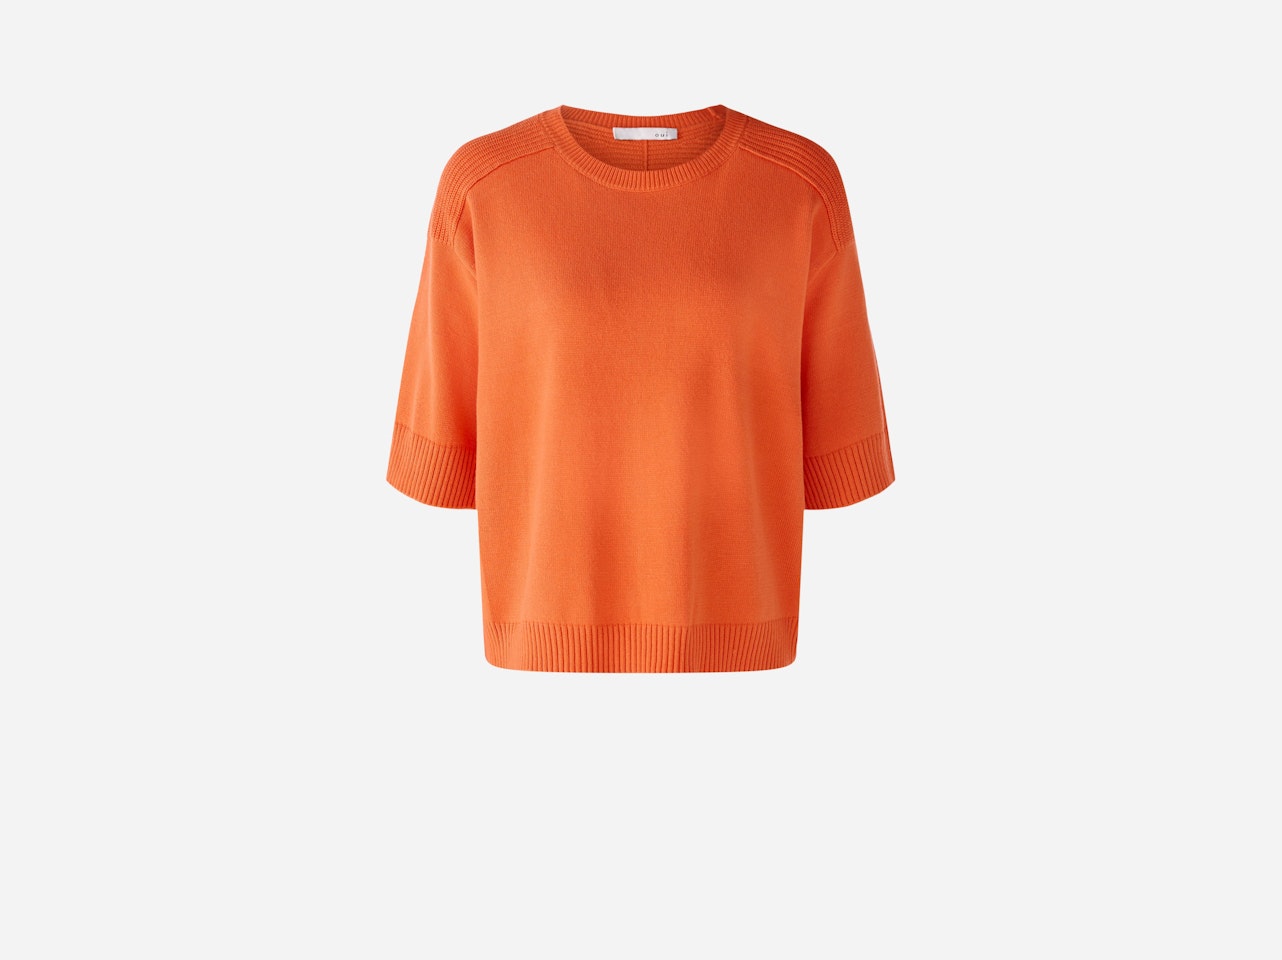 Bild 7 von Knitted jumper in cotton blend in vermillion orange | Oui